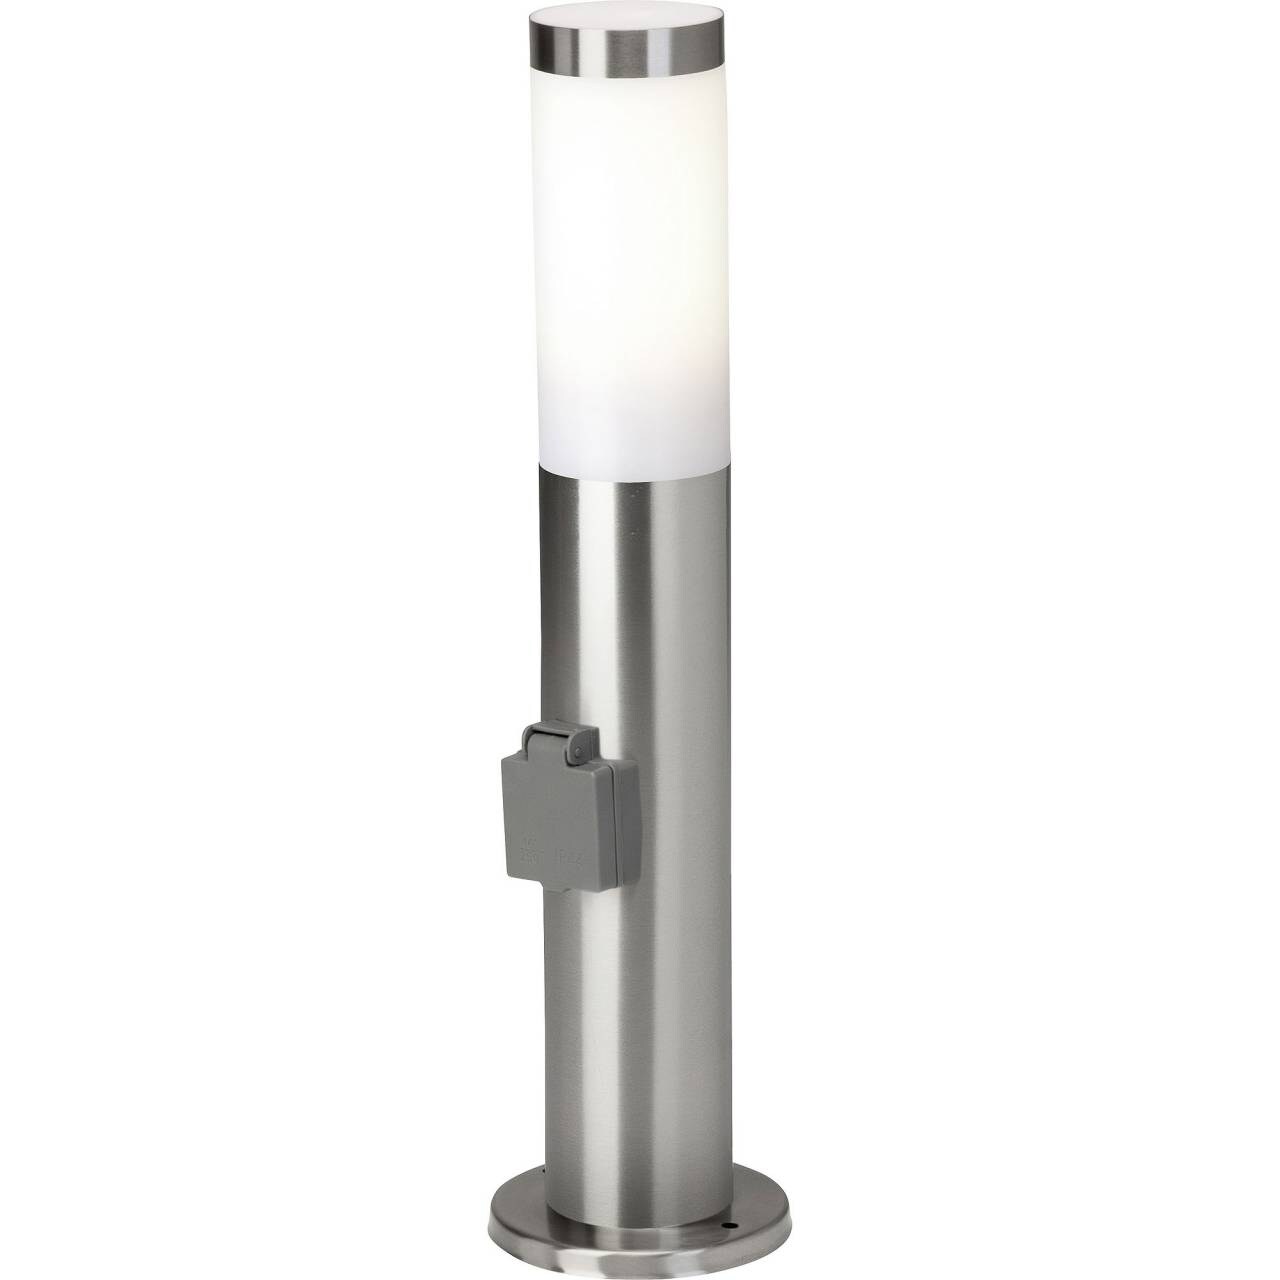 BRILLIANT Lampe Chorus Außensockelleuchte Steckdose edelstahl   1x A60, E27, 20W, geeignet für Normallampen (nicht entha